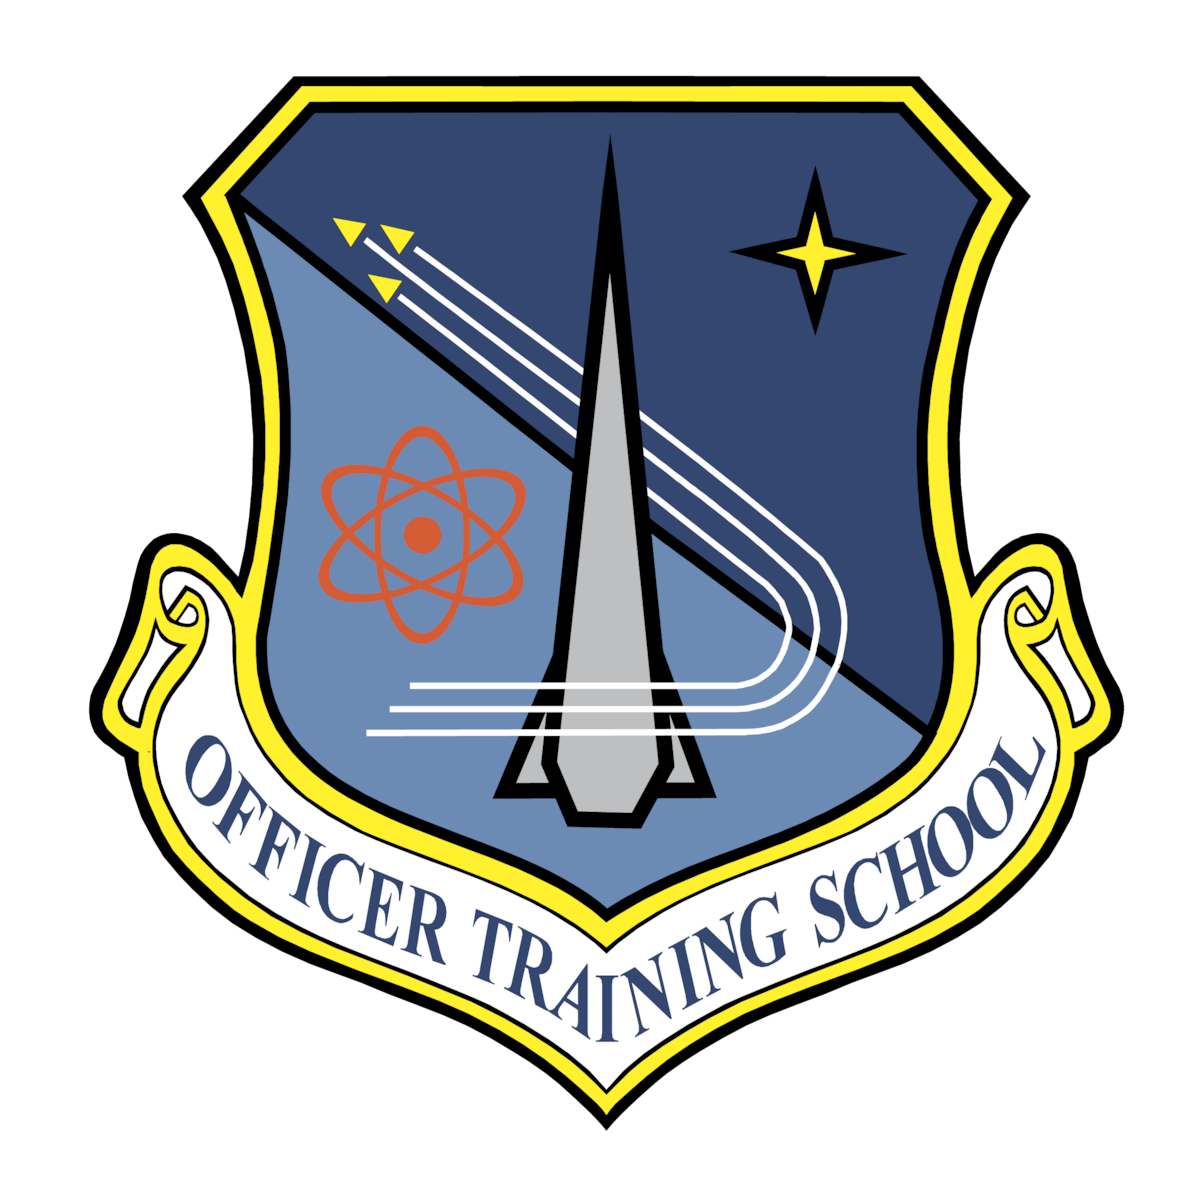 Officer Training School (OTS) emblem